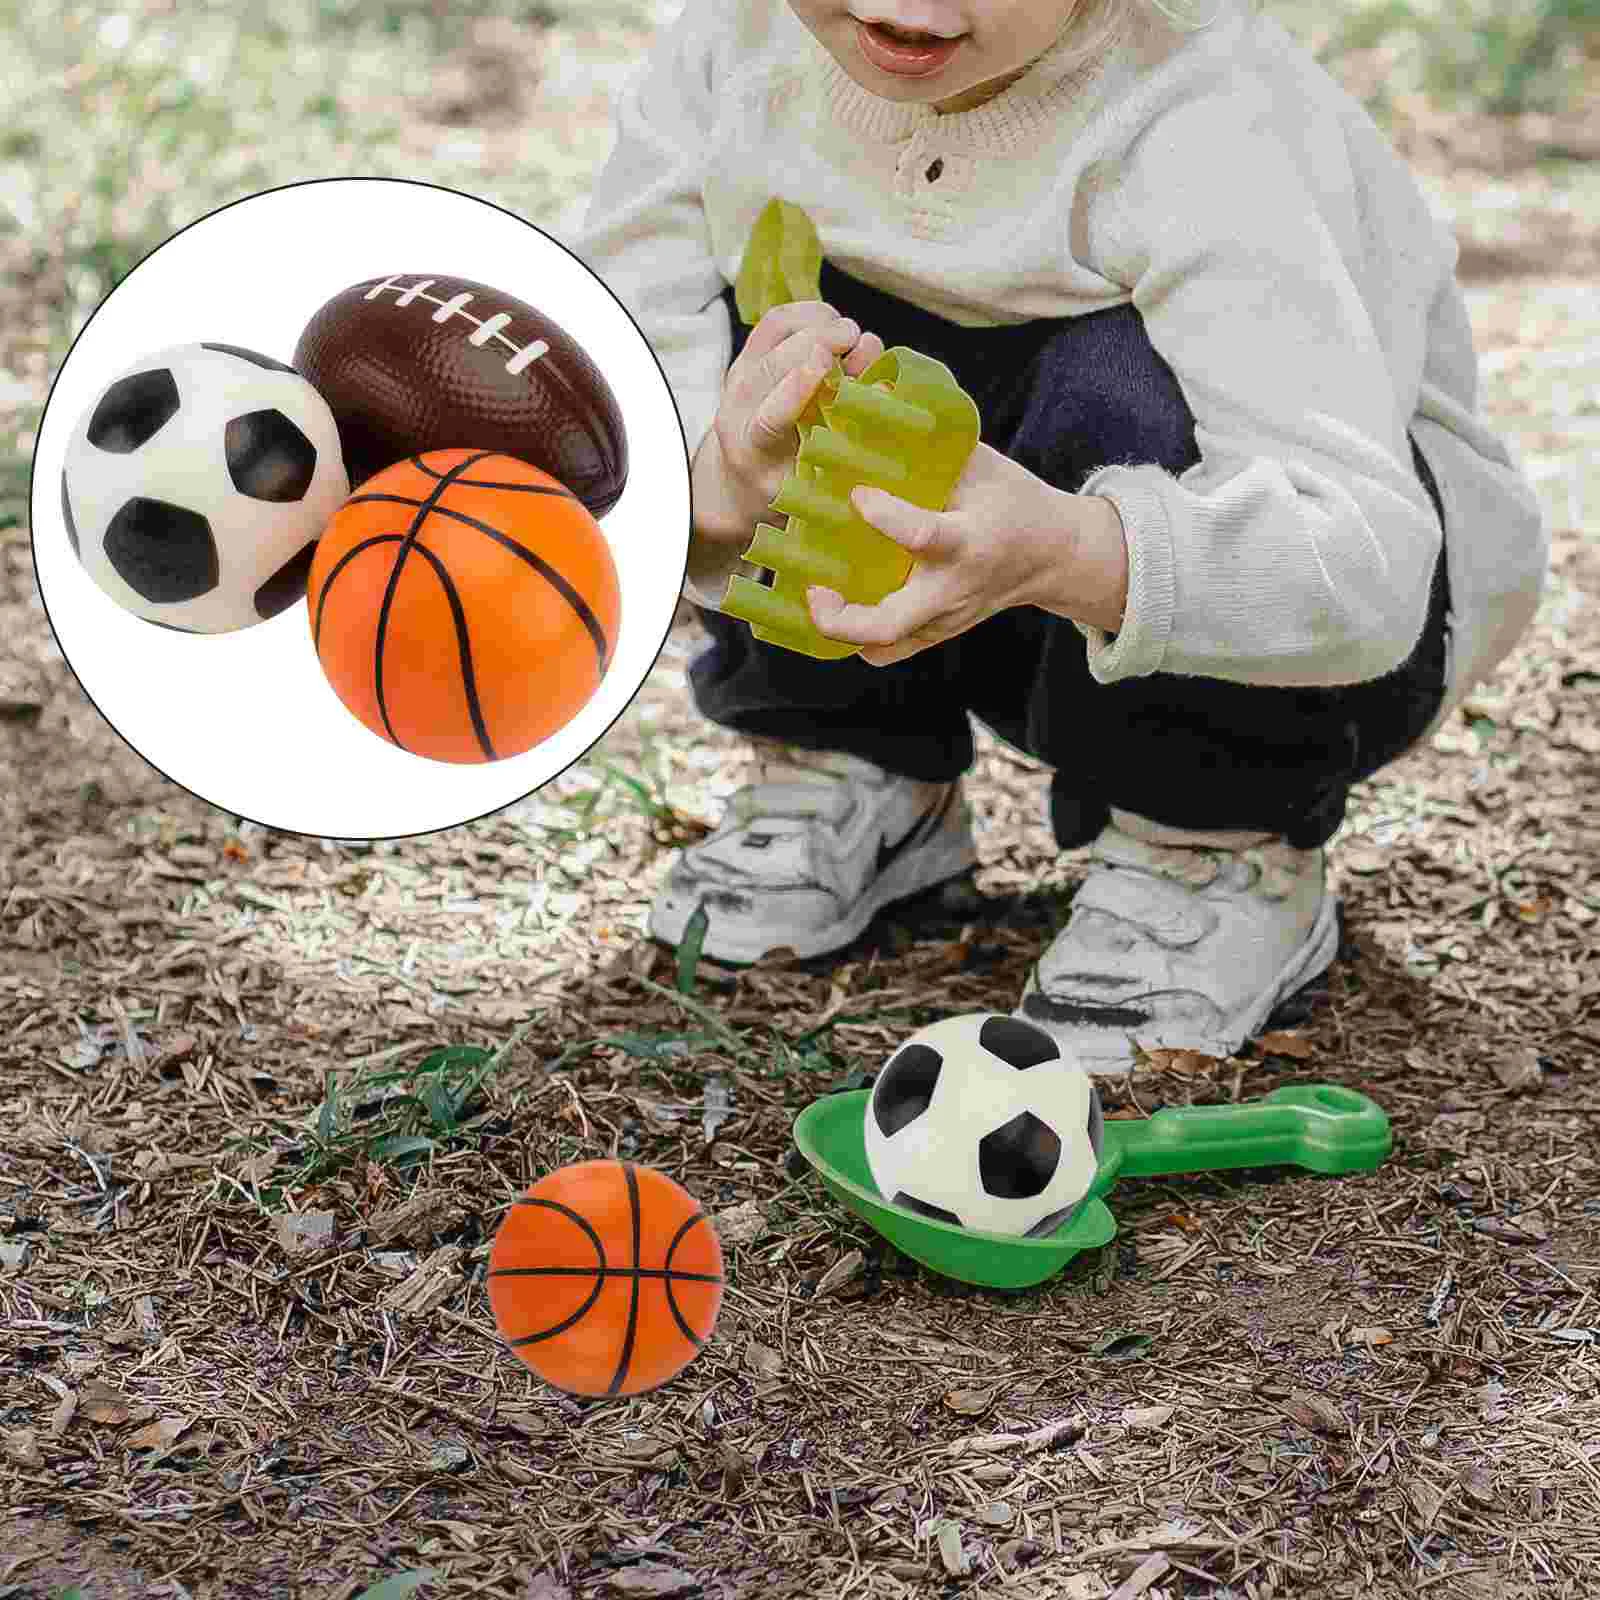 

3 шт. мини-мячи для баскетбола, игры в футбол, сувениры для детей